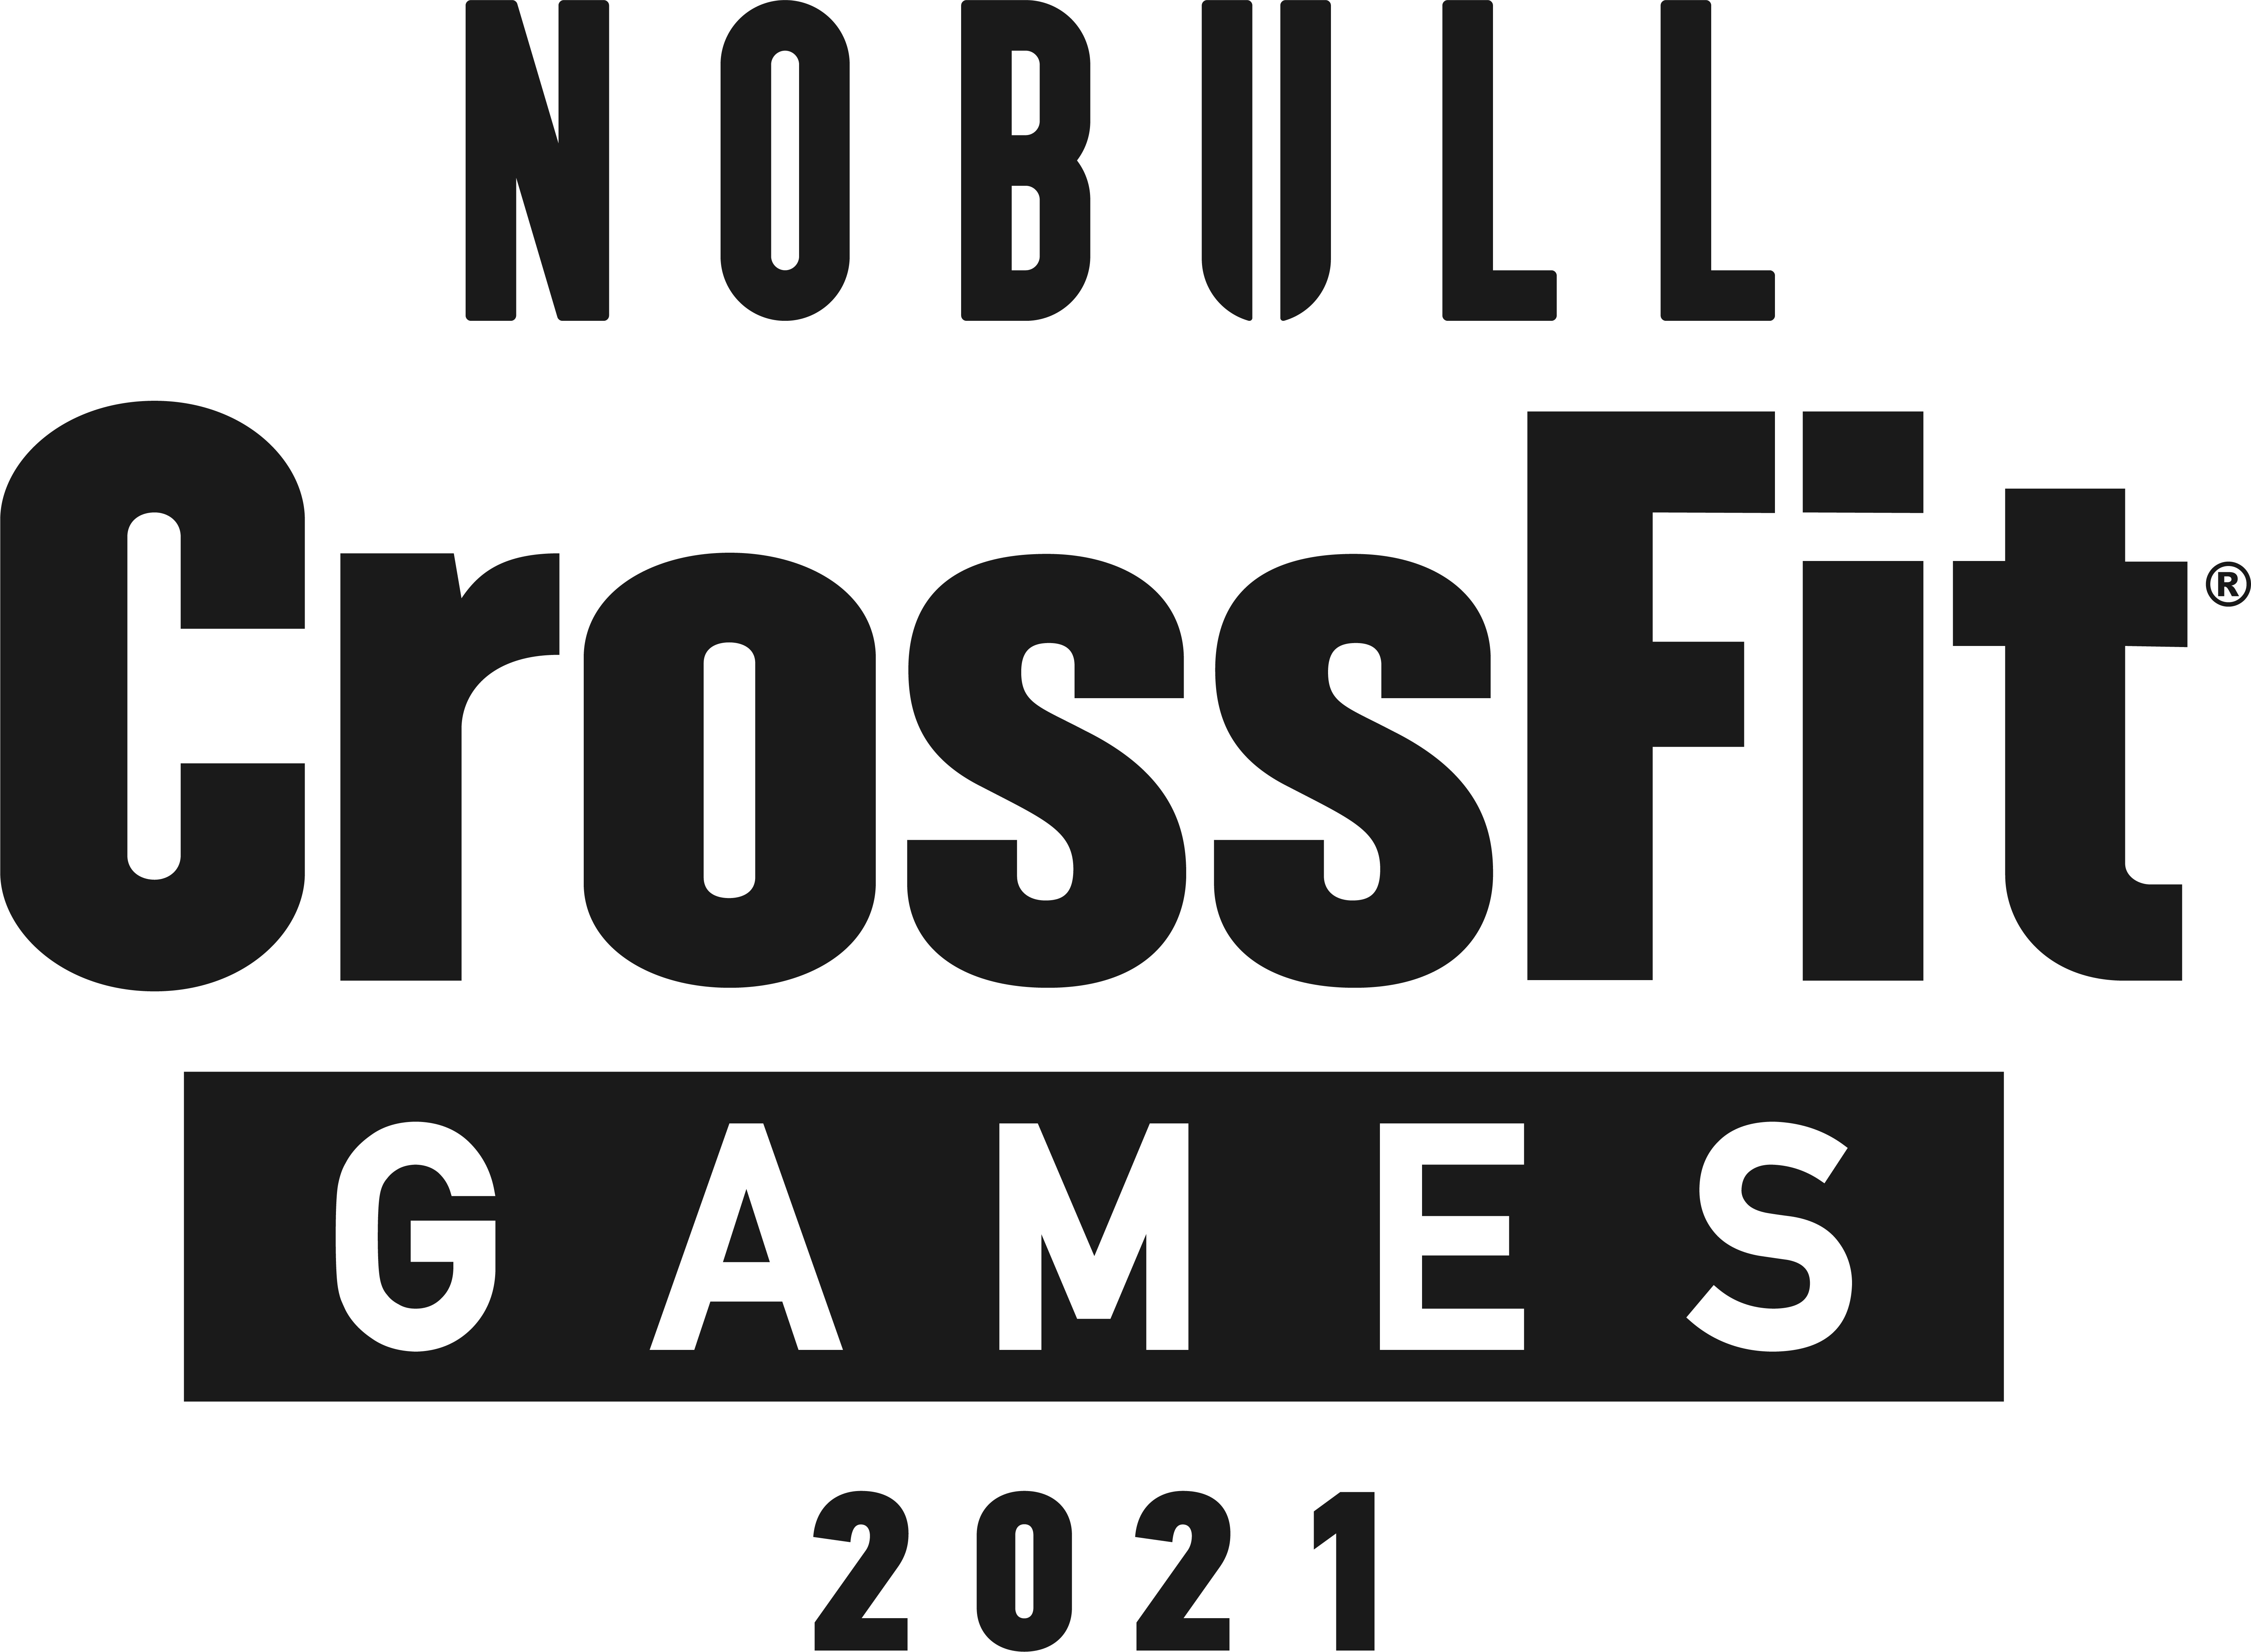 Leaderboard  Crossfit games, Reebok crossfit games, Crossfit